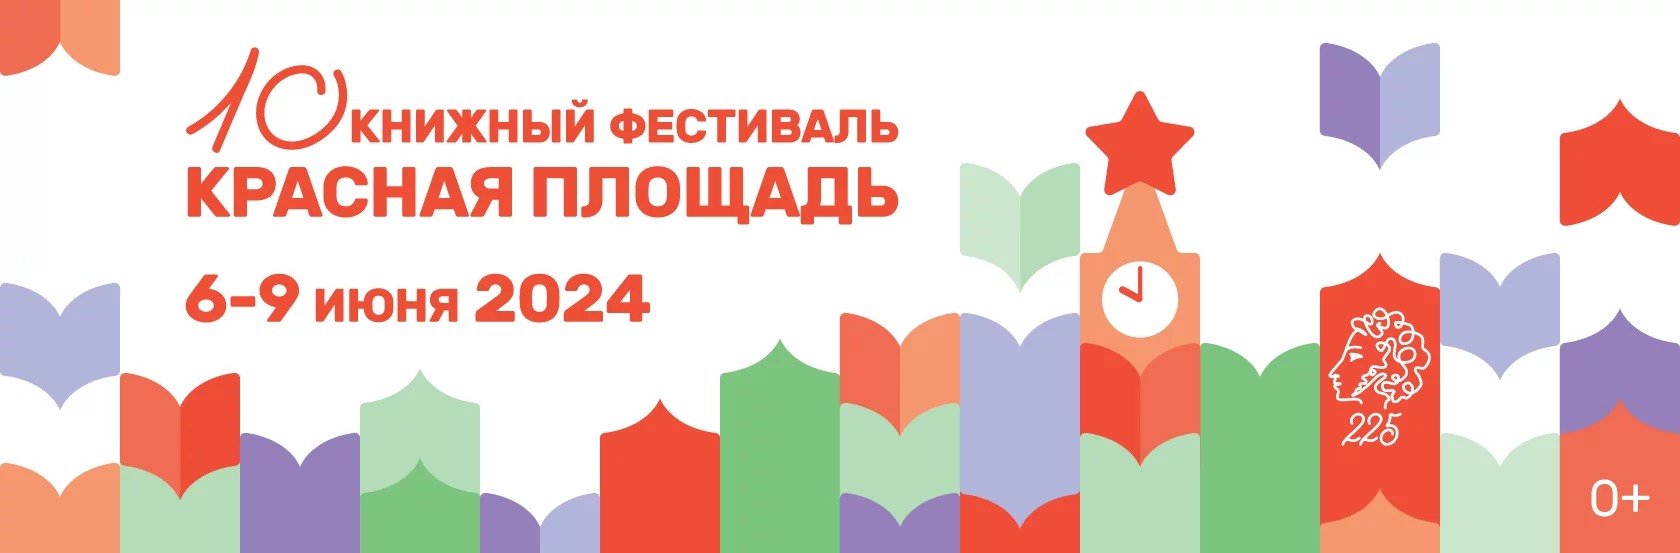 Программа книжного фестиваля «Красная площадь» в 2024 году на 6 июня